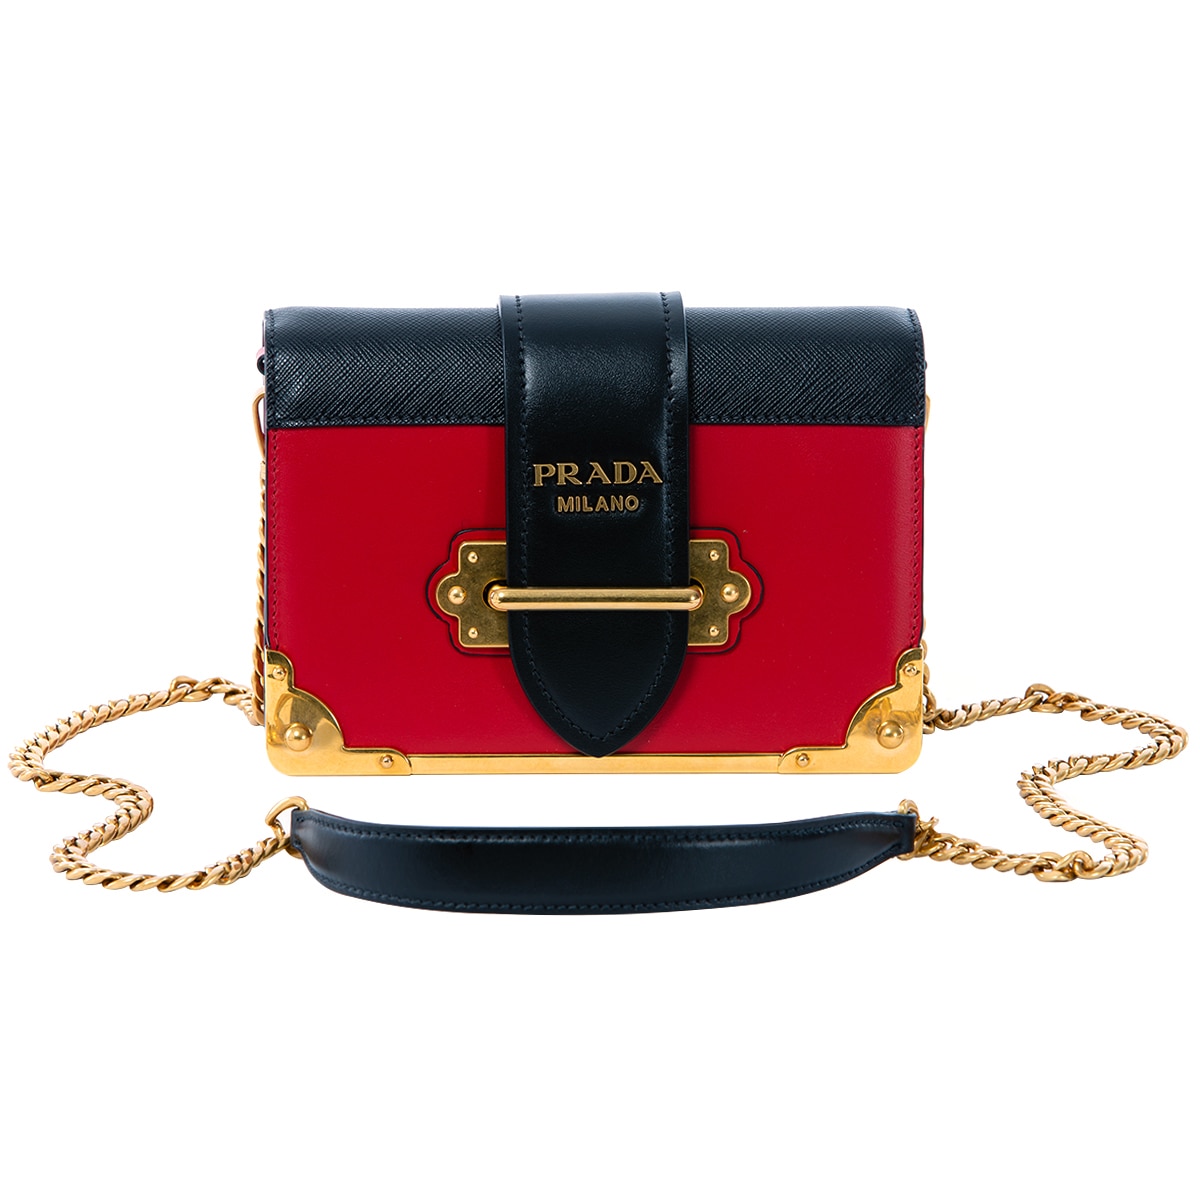 prada red and black handbag